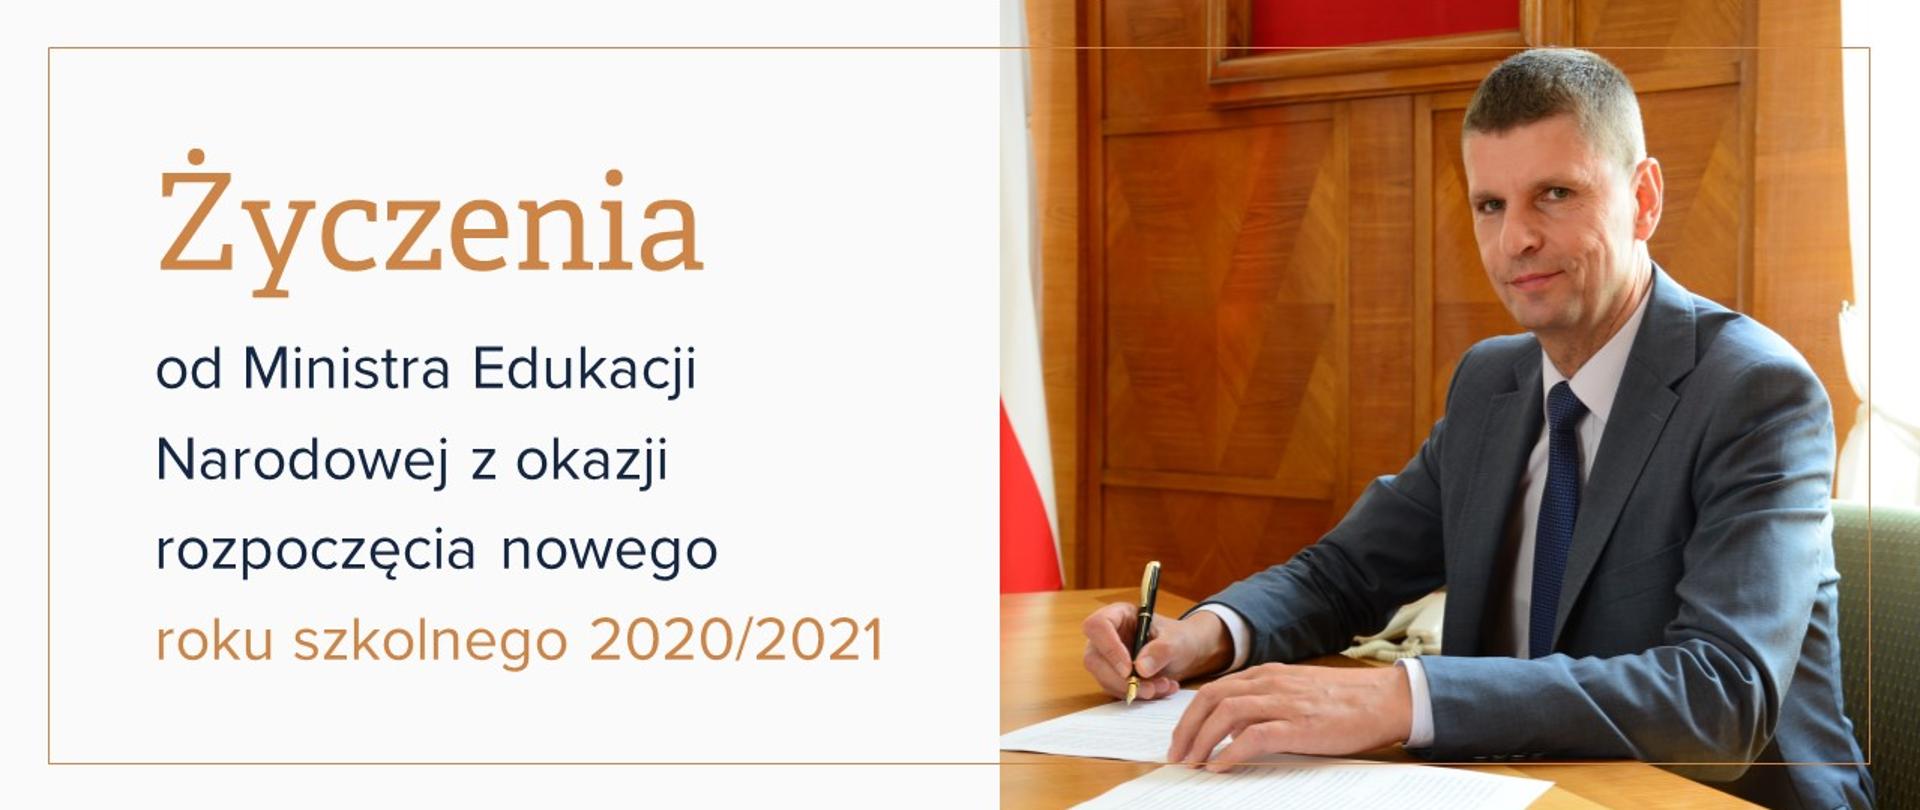 Zdjęcie Ministra Edukacji Narodowej Dariusza Piontkowskiego i tekst obok "Życzenia od Ministra Edukacji Narodowej z okazji rozpoczęcia nowego roku szkolnego 2020/202"